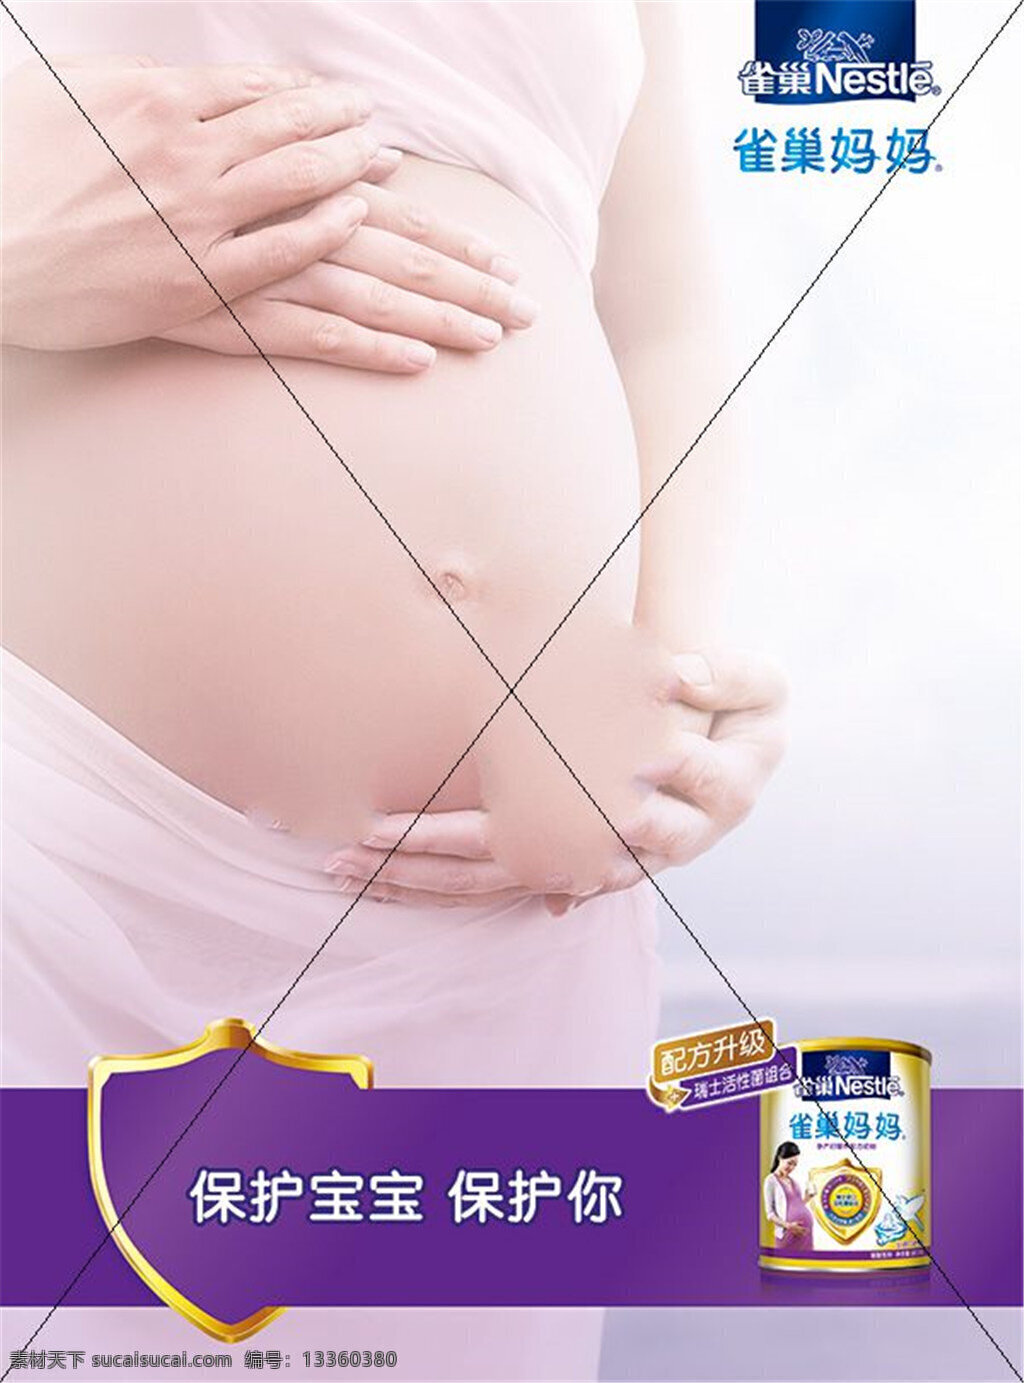 雀巢 妈妈 奶粉 广告 孕妇 呵护 宝宝 白色